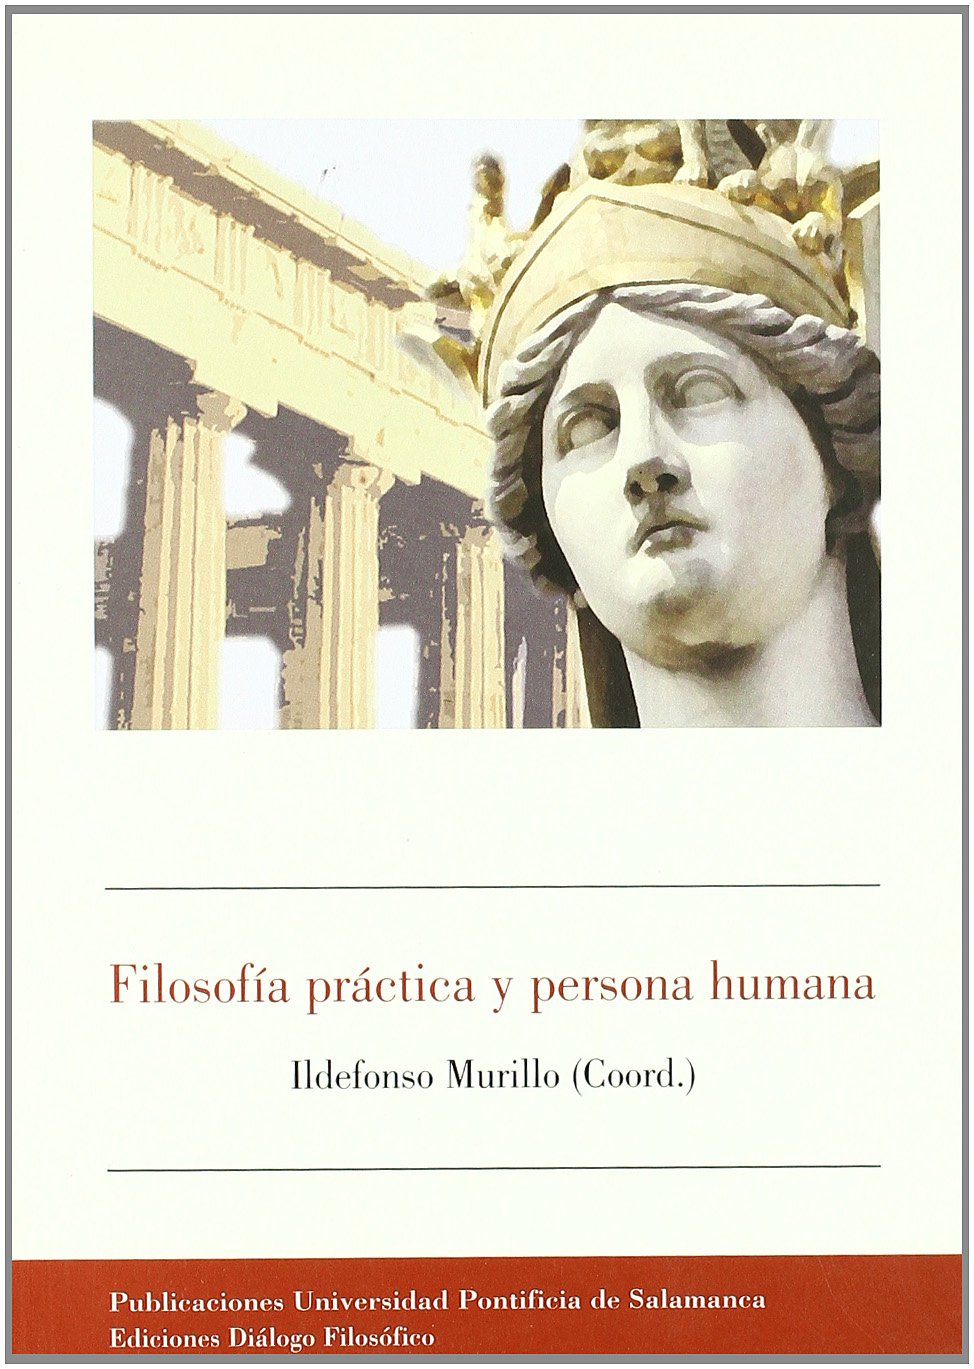 Imagen de portada del libro Filosofía práctica y persona humana